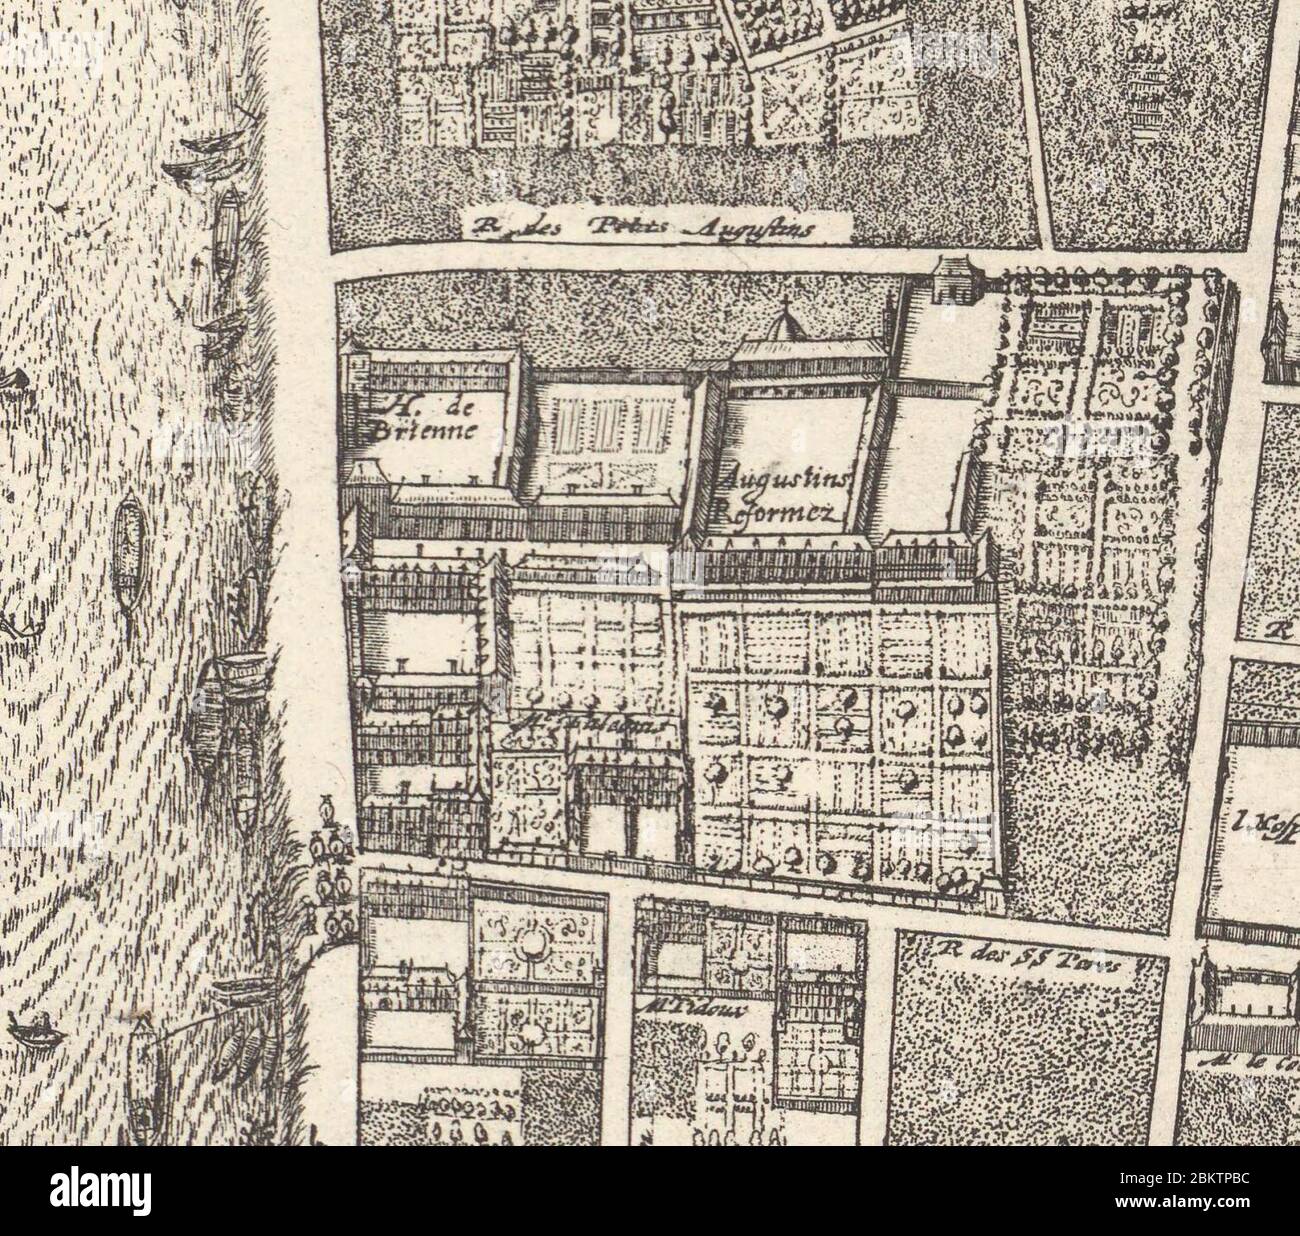 Hôtel de Brienne on th Quai Malaquais in Paris, Gomboust map of Paris – David Rumsey. Stock Photo